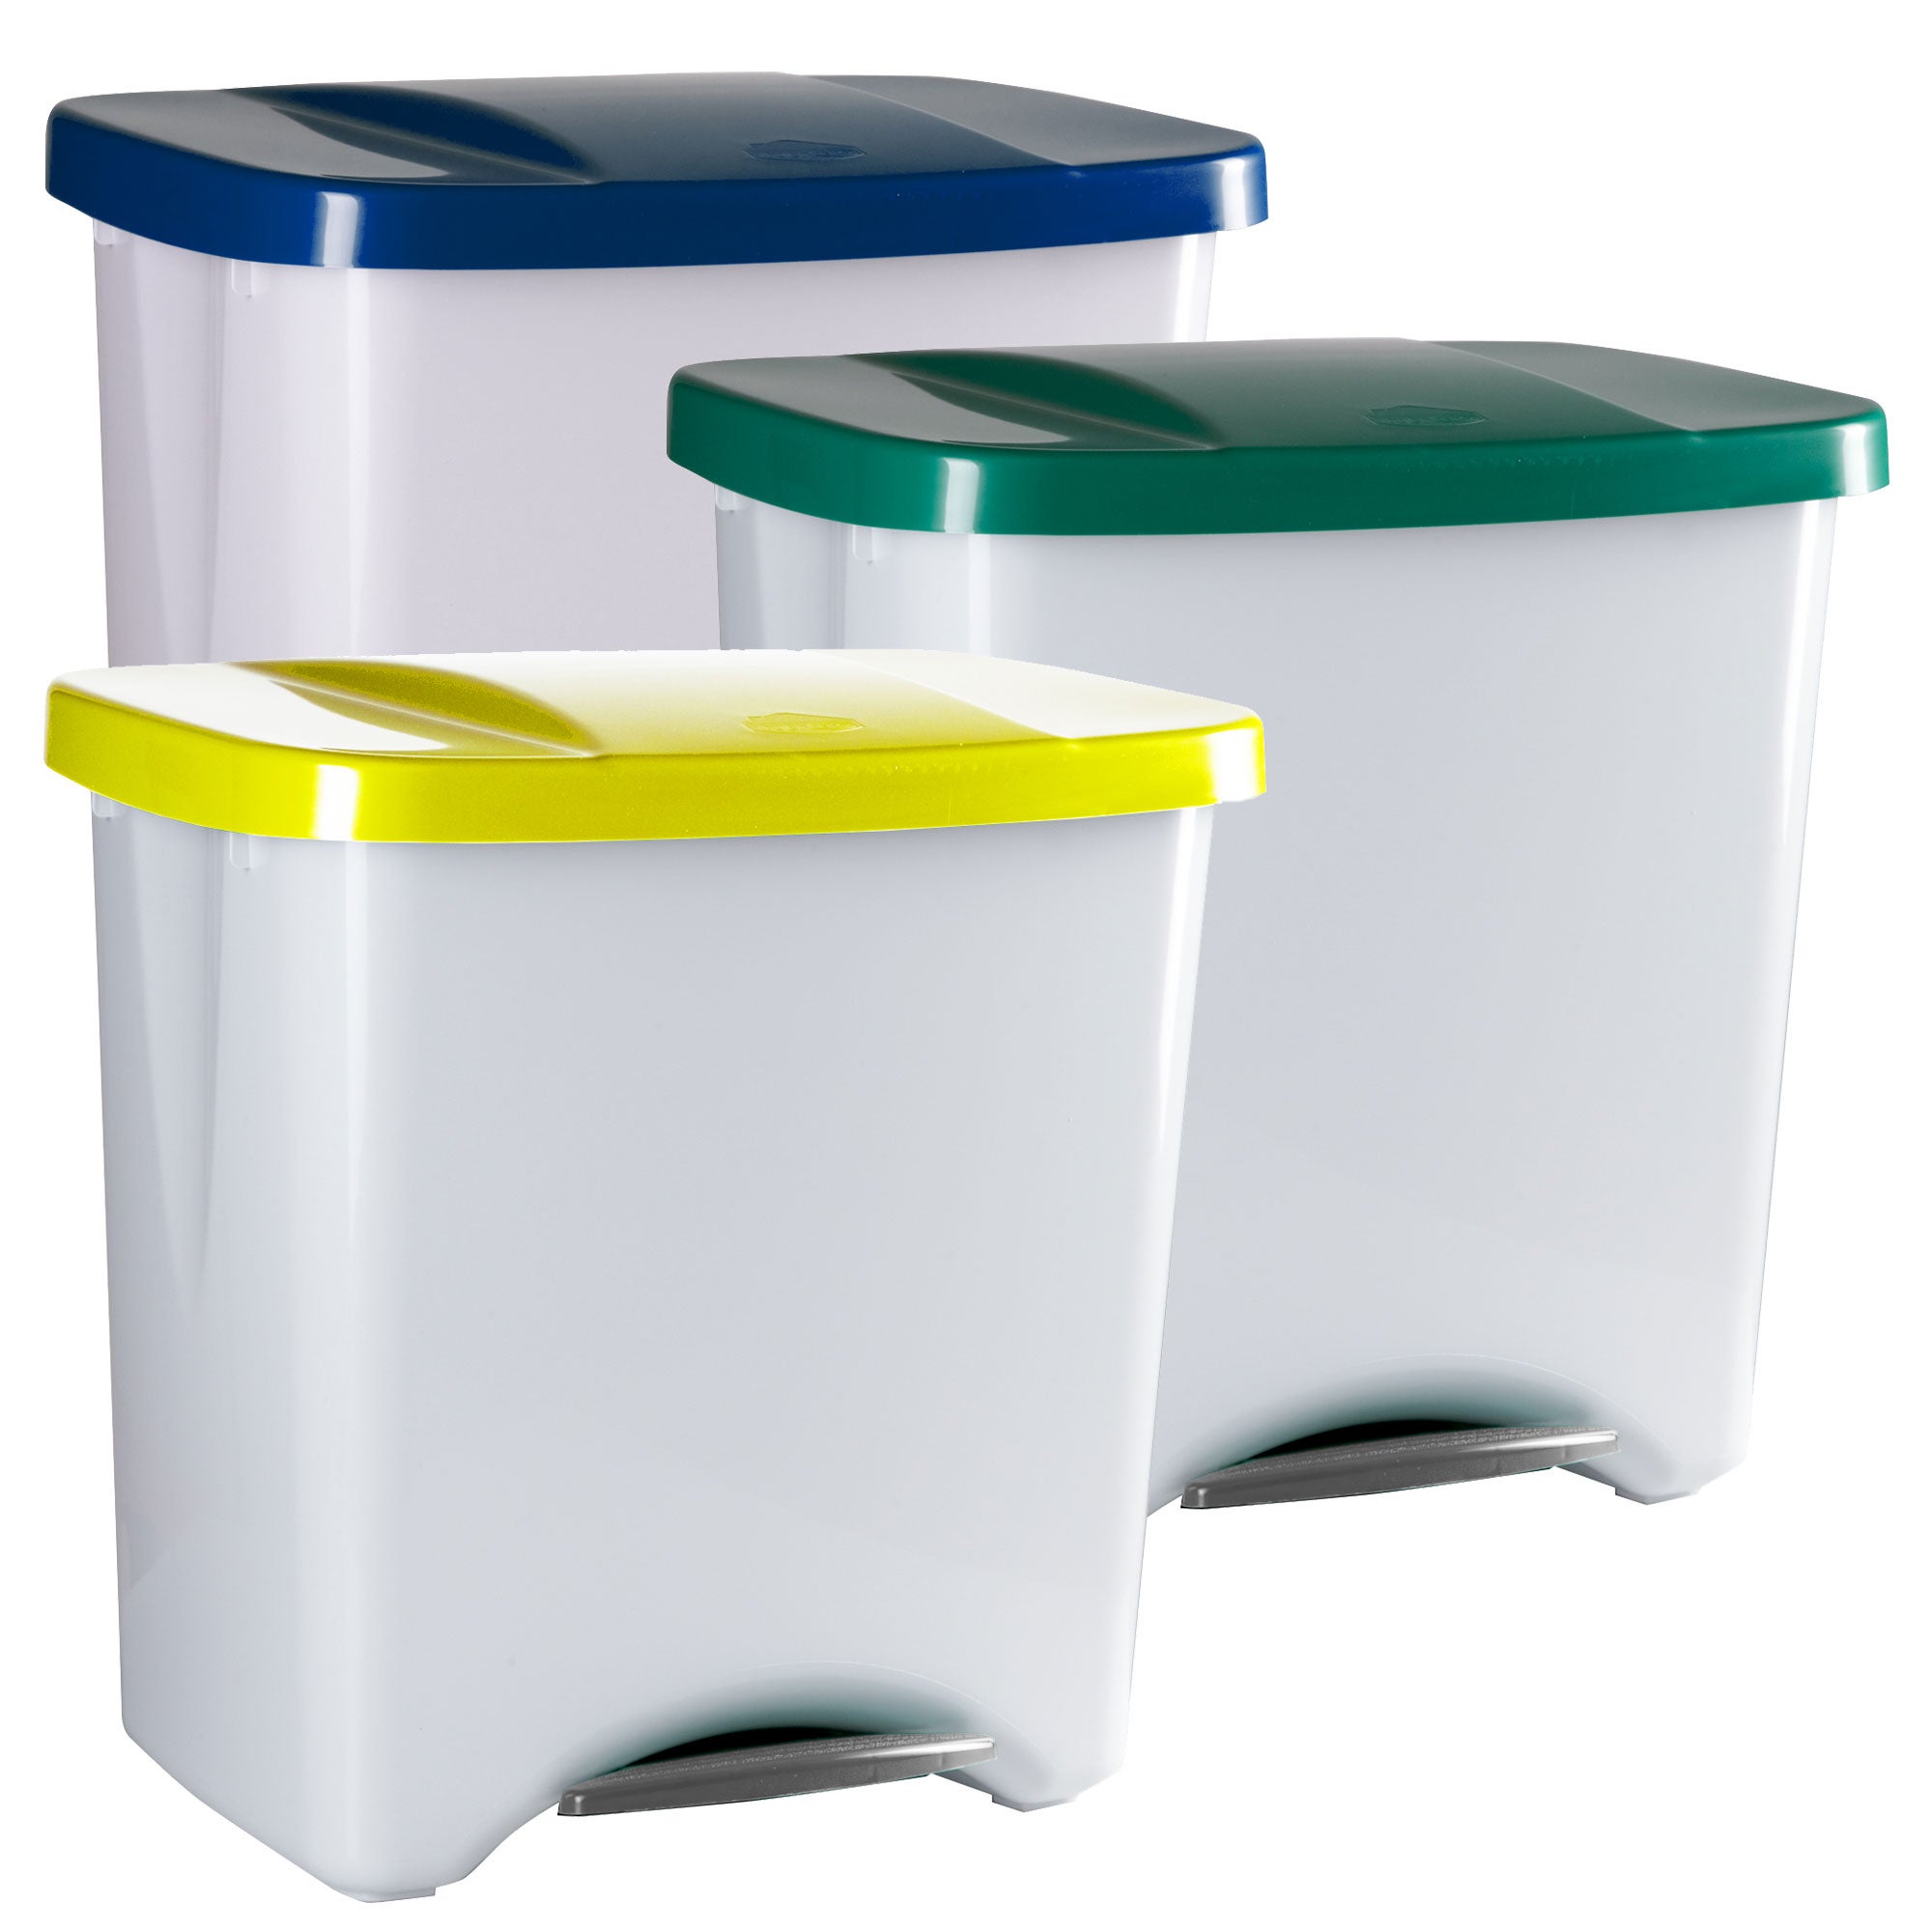 Pack reciclaje Pedalbin Ecológico: 3 Contenedores de 40 litros en colores.  Capacidad total 120 litros.